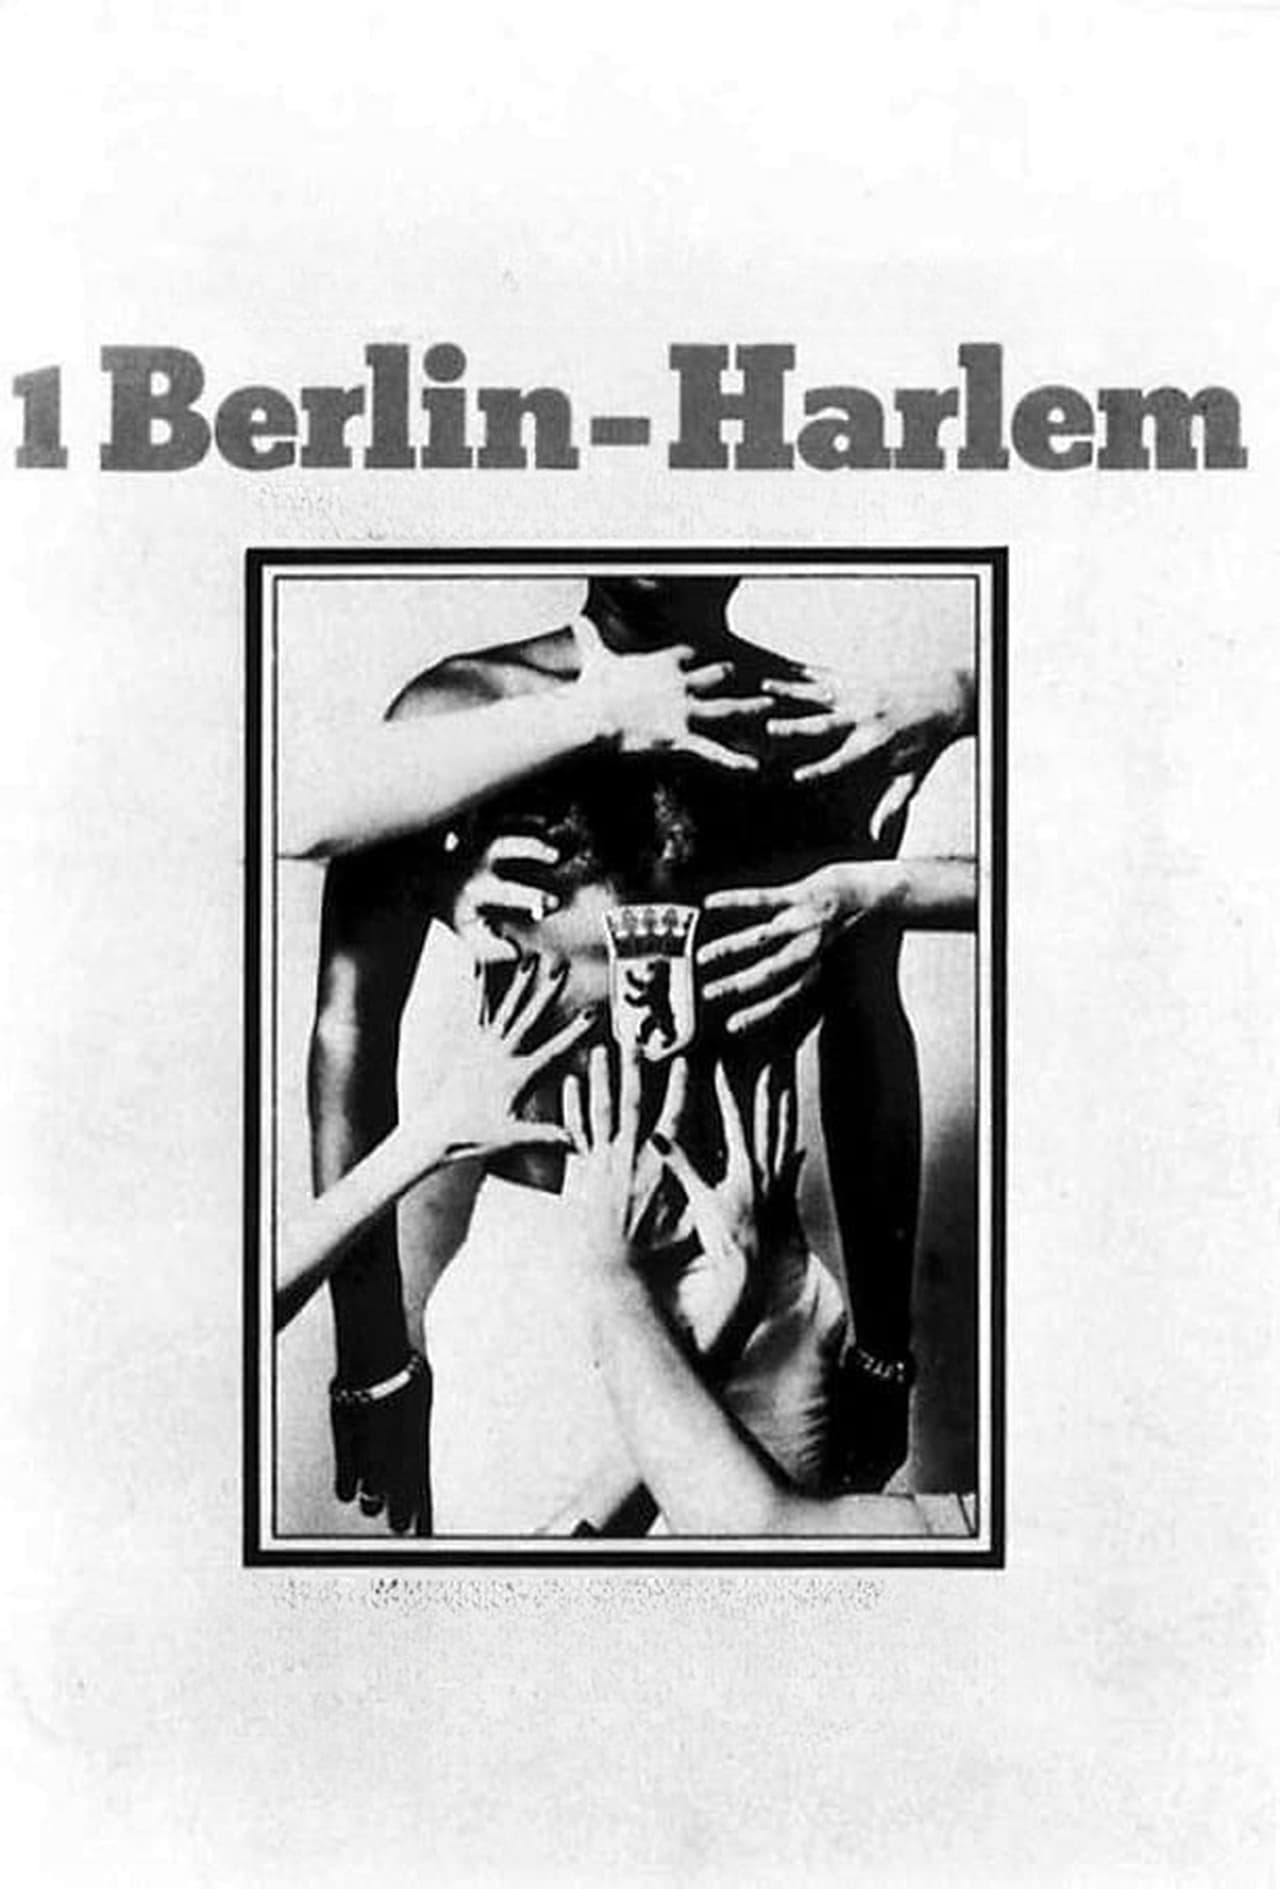 1 Berlin-Harlem